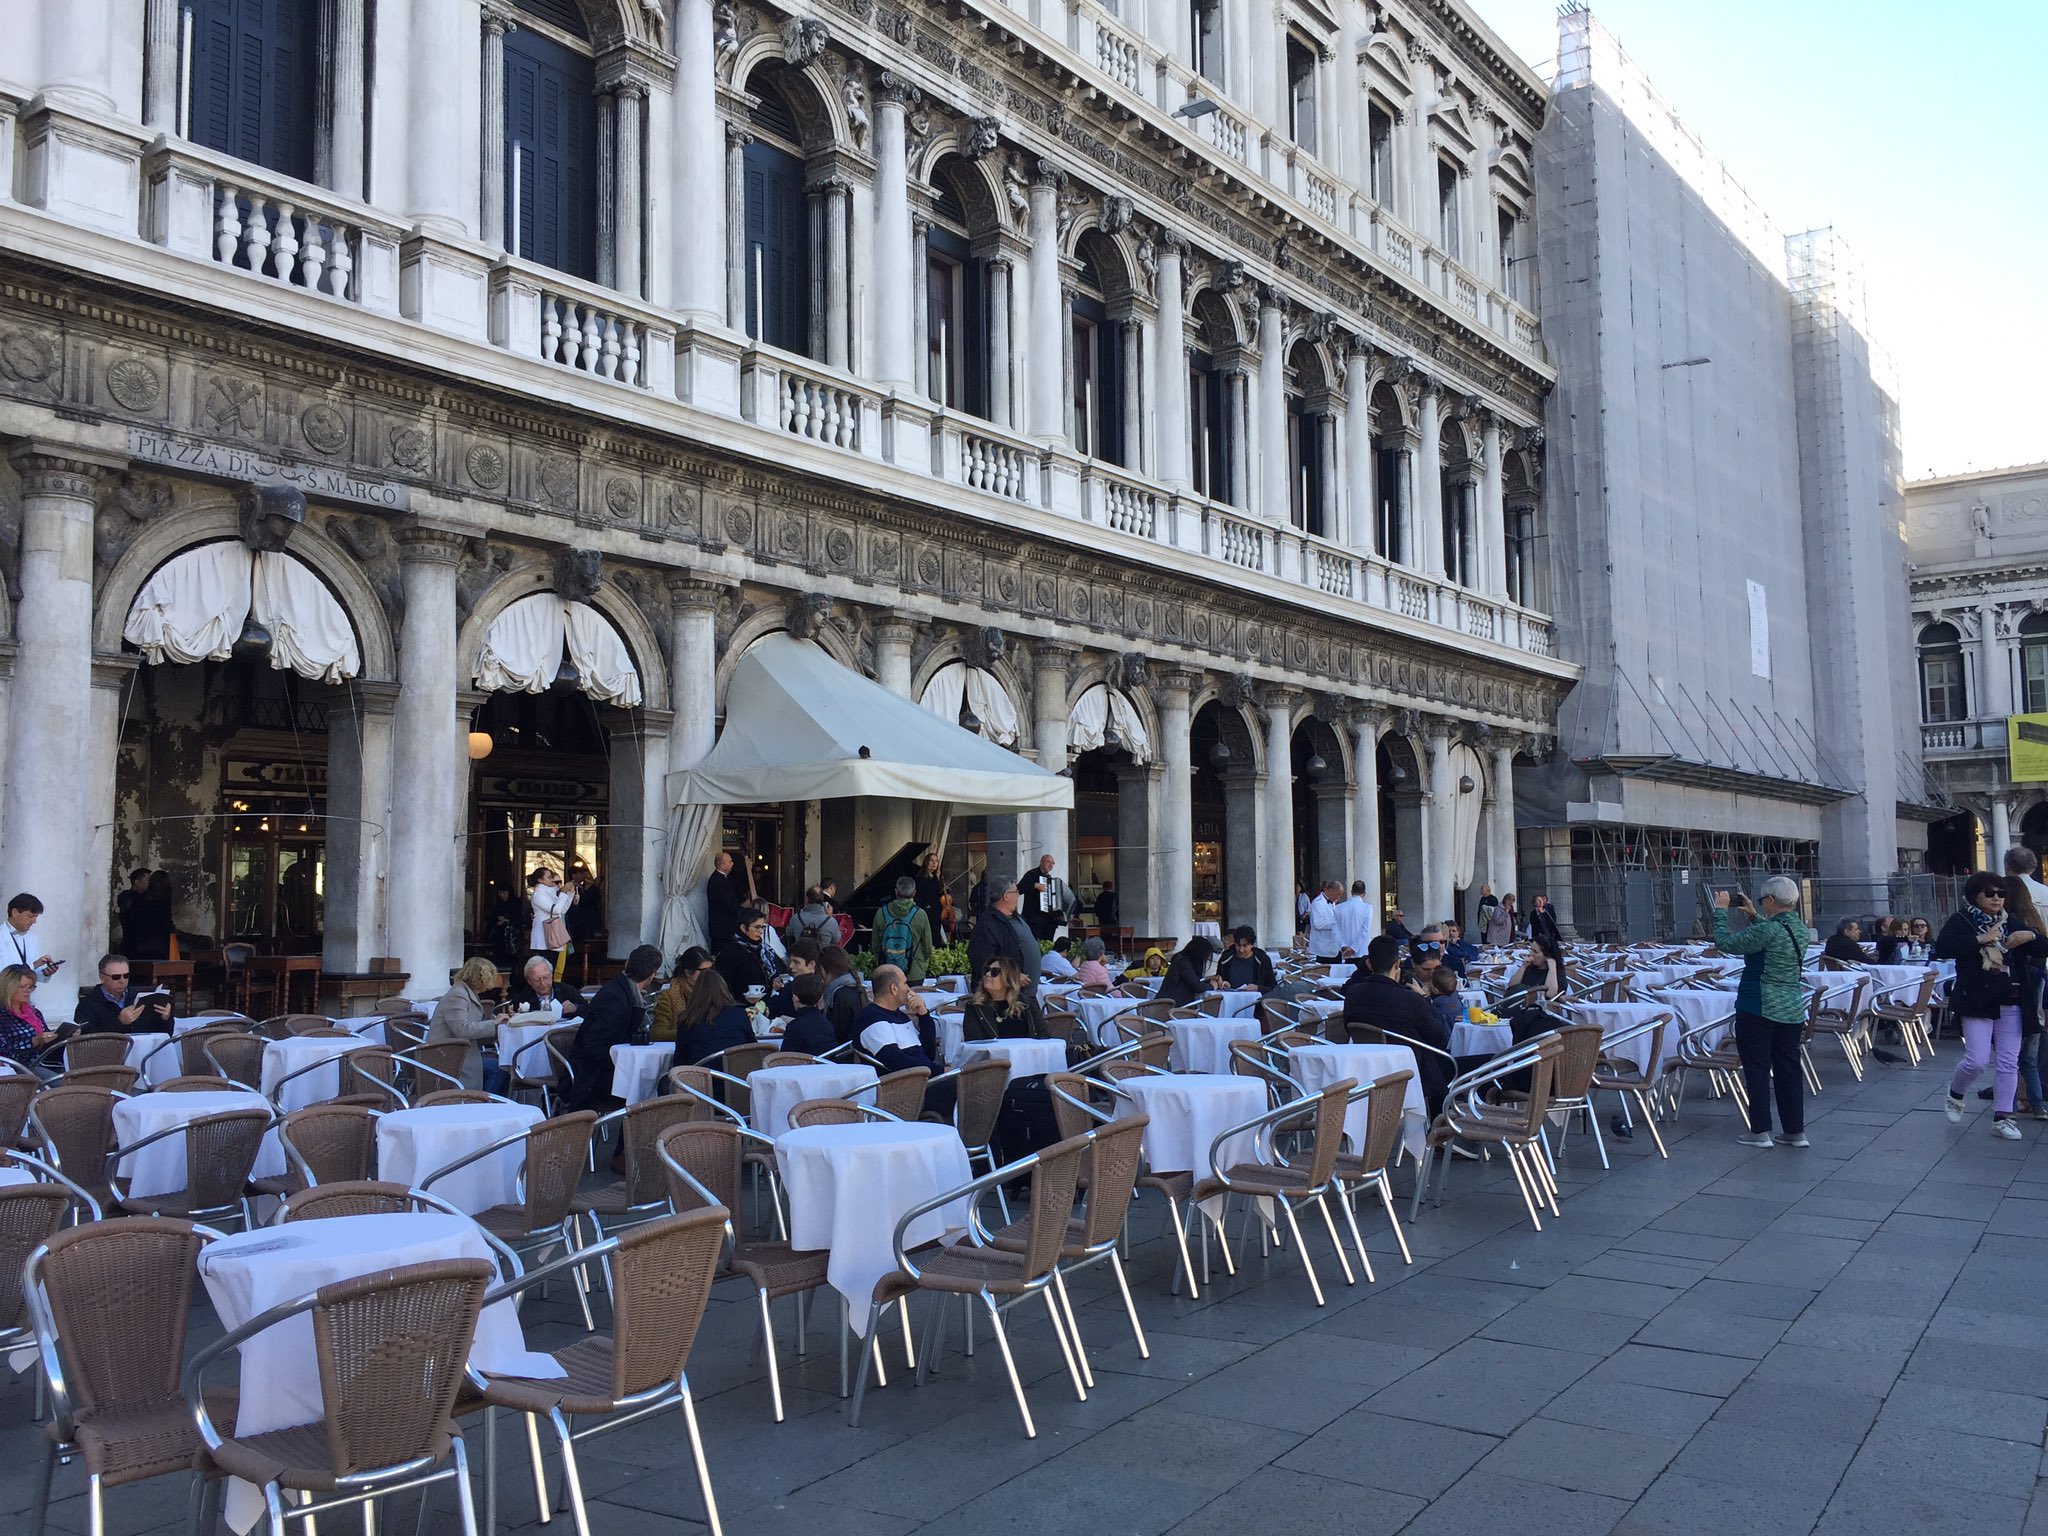 なぐも サンマルコ広場のカフェ フローリアン ヴェネツィア最古のカフェで カフェラテ発祥店だという Ariaでも出てきた場所なので 寄ってみた お店が生演奏常にしてるってスゴイよなァ T Co Yseqfqe6un Twitter